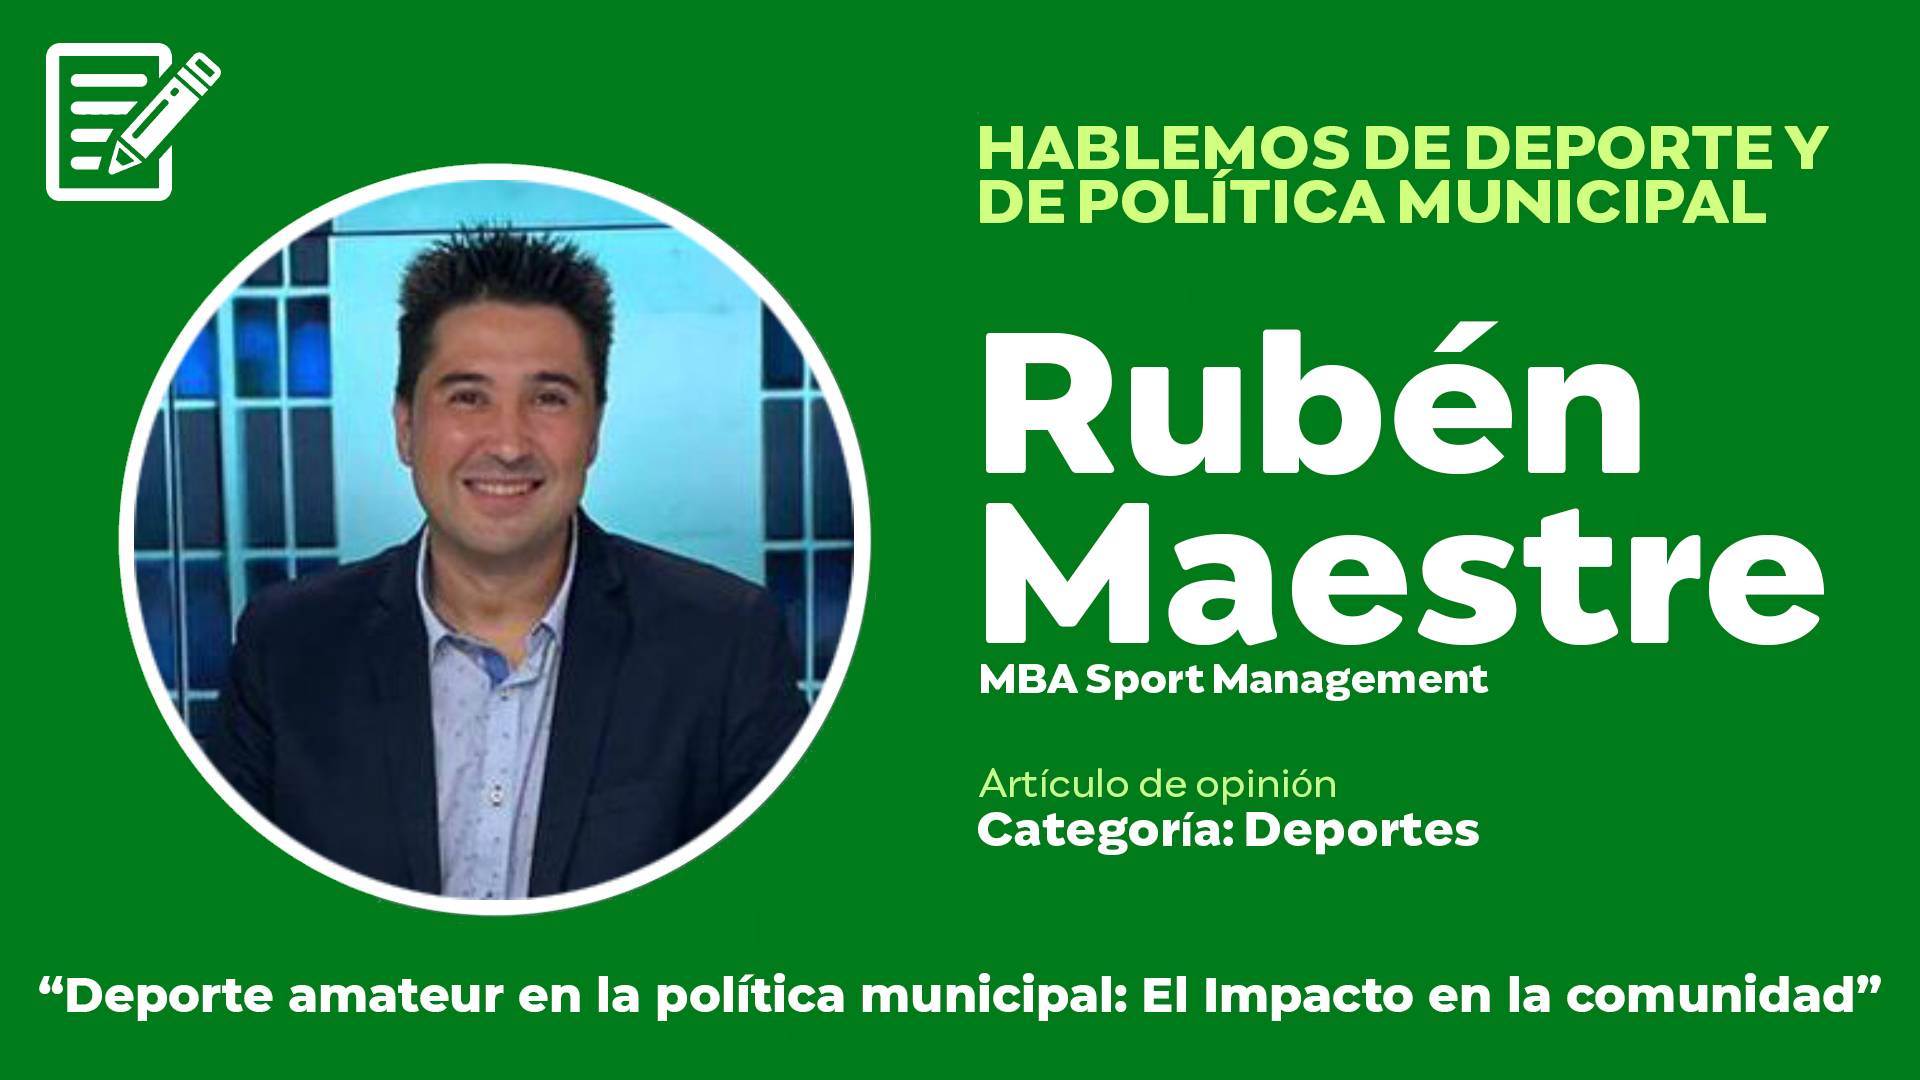 Deporte amateur en la política municipal: El Impacto en la comunidad